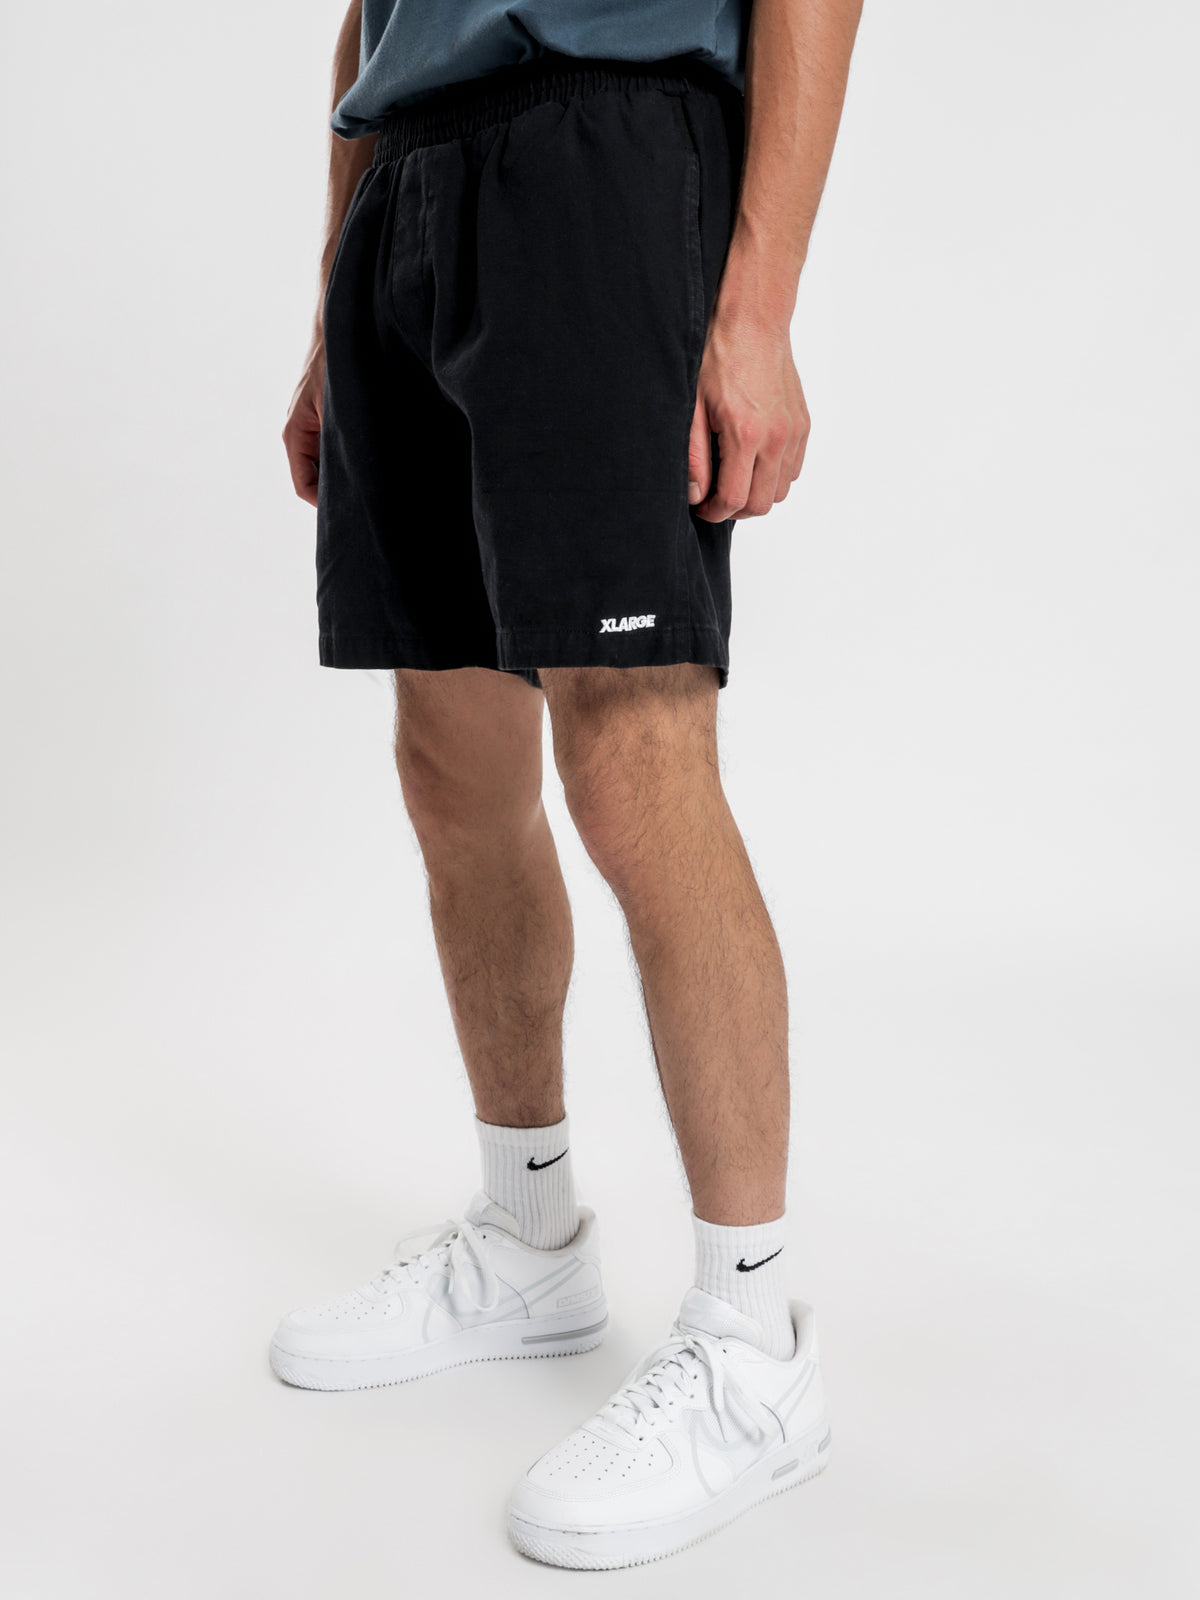 LA 91 Shorts in Black